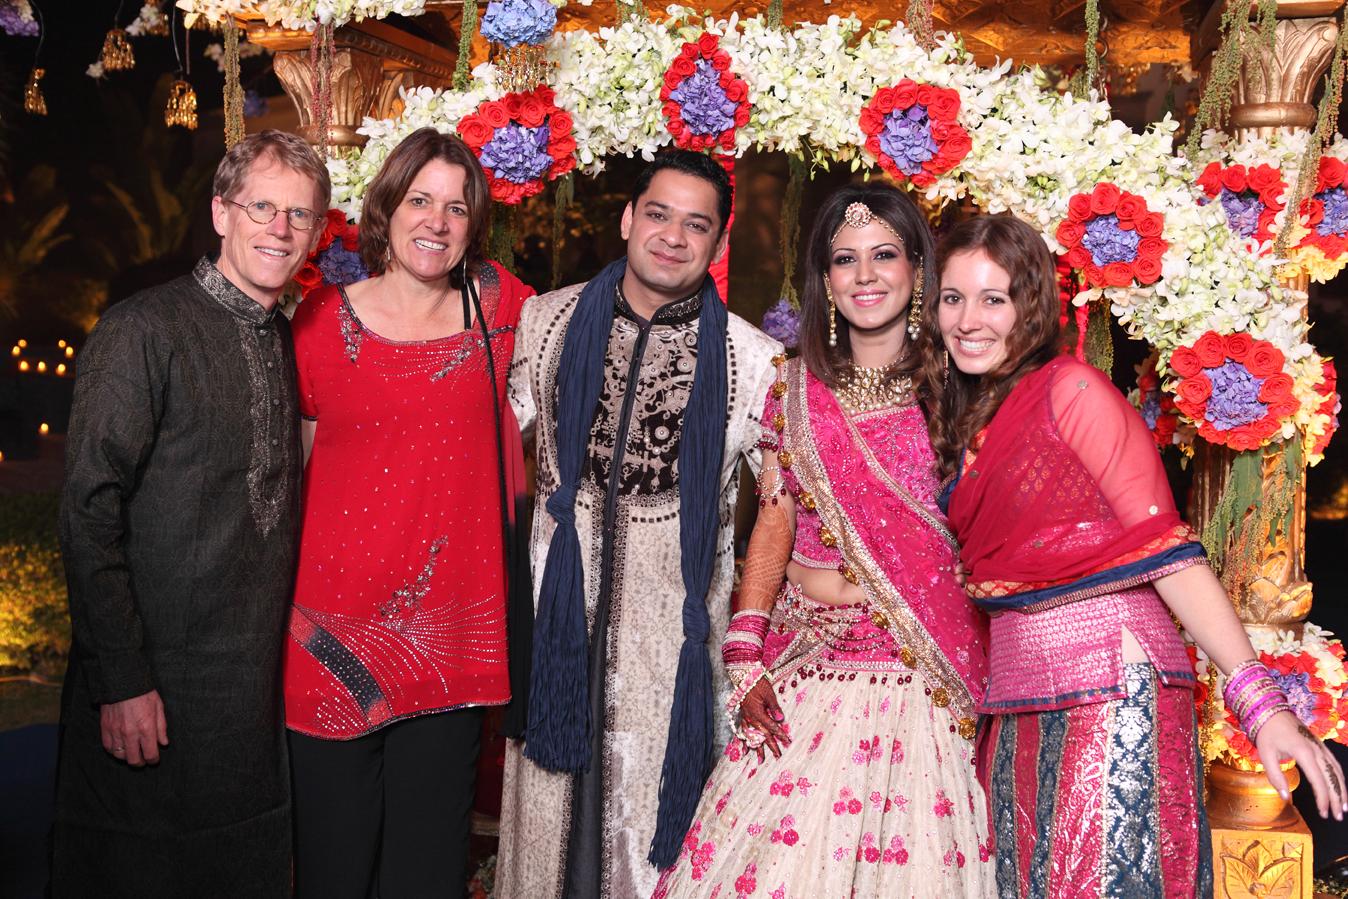 Attending an Indian wedding